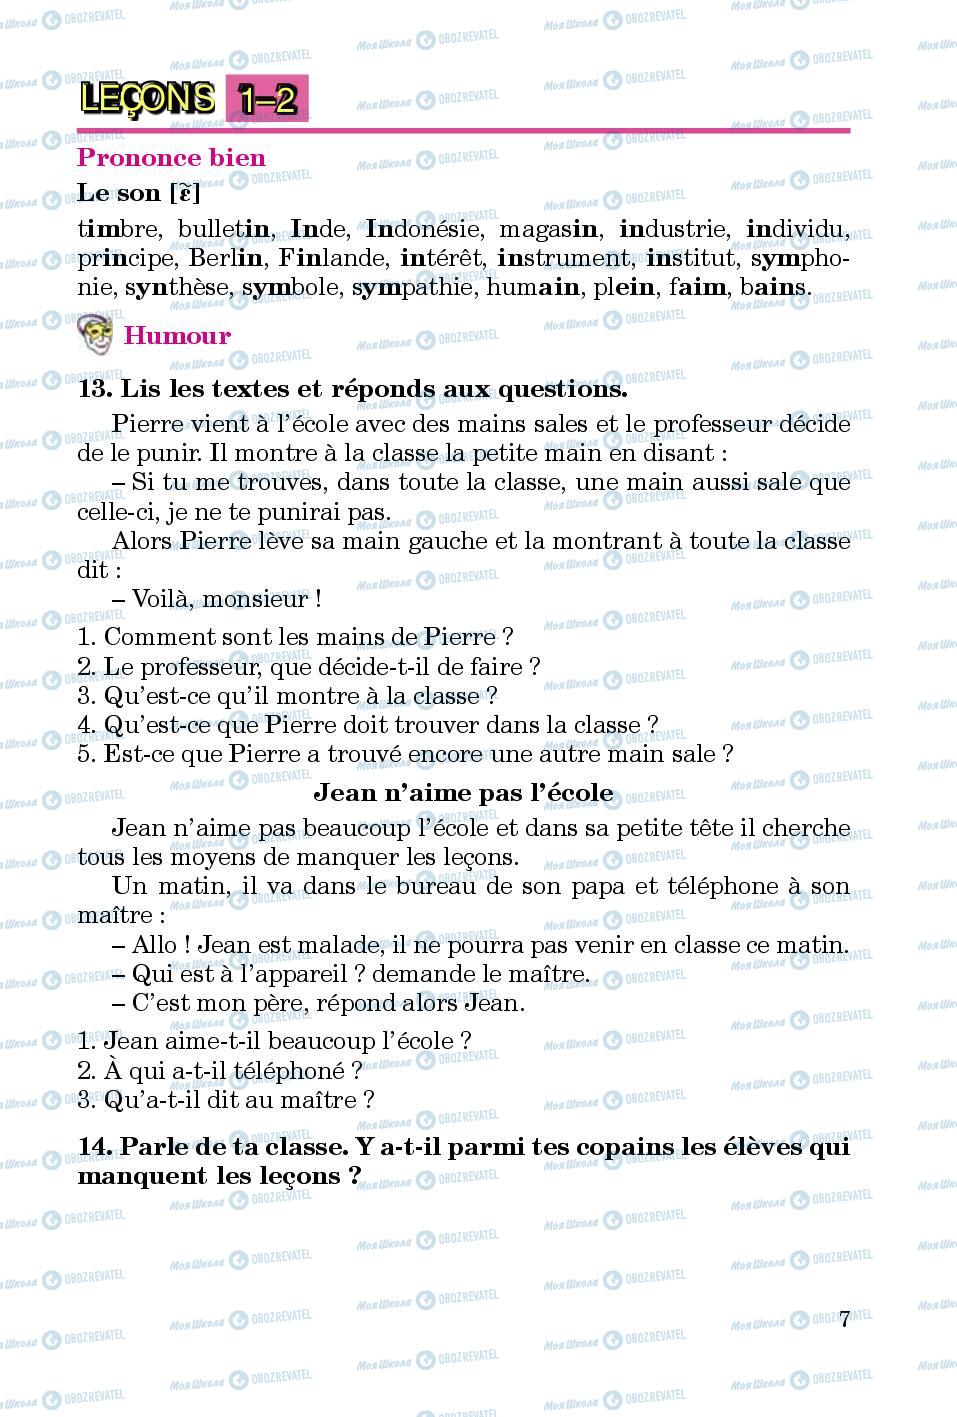 Підручники Французька мова 5 клас сторінка 7